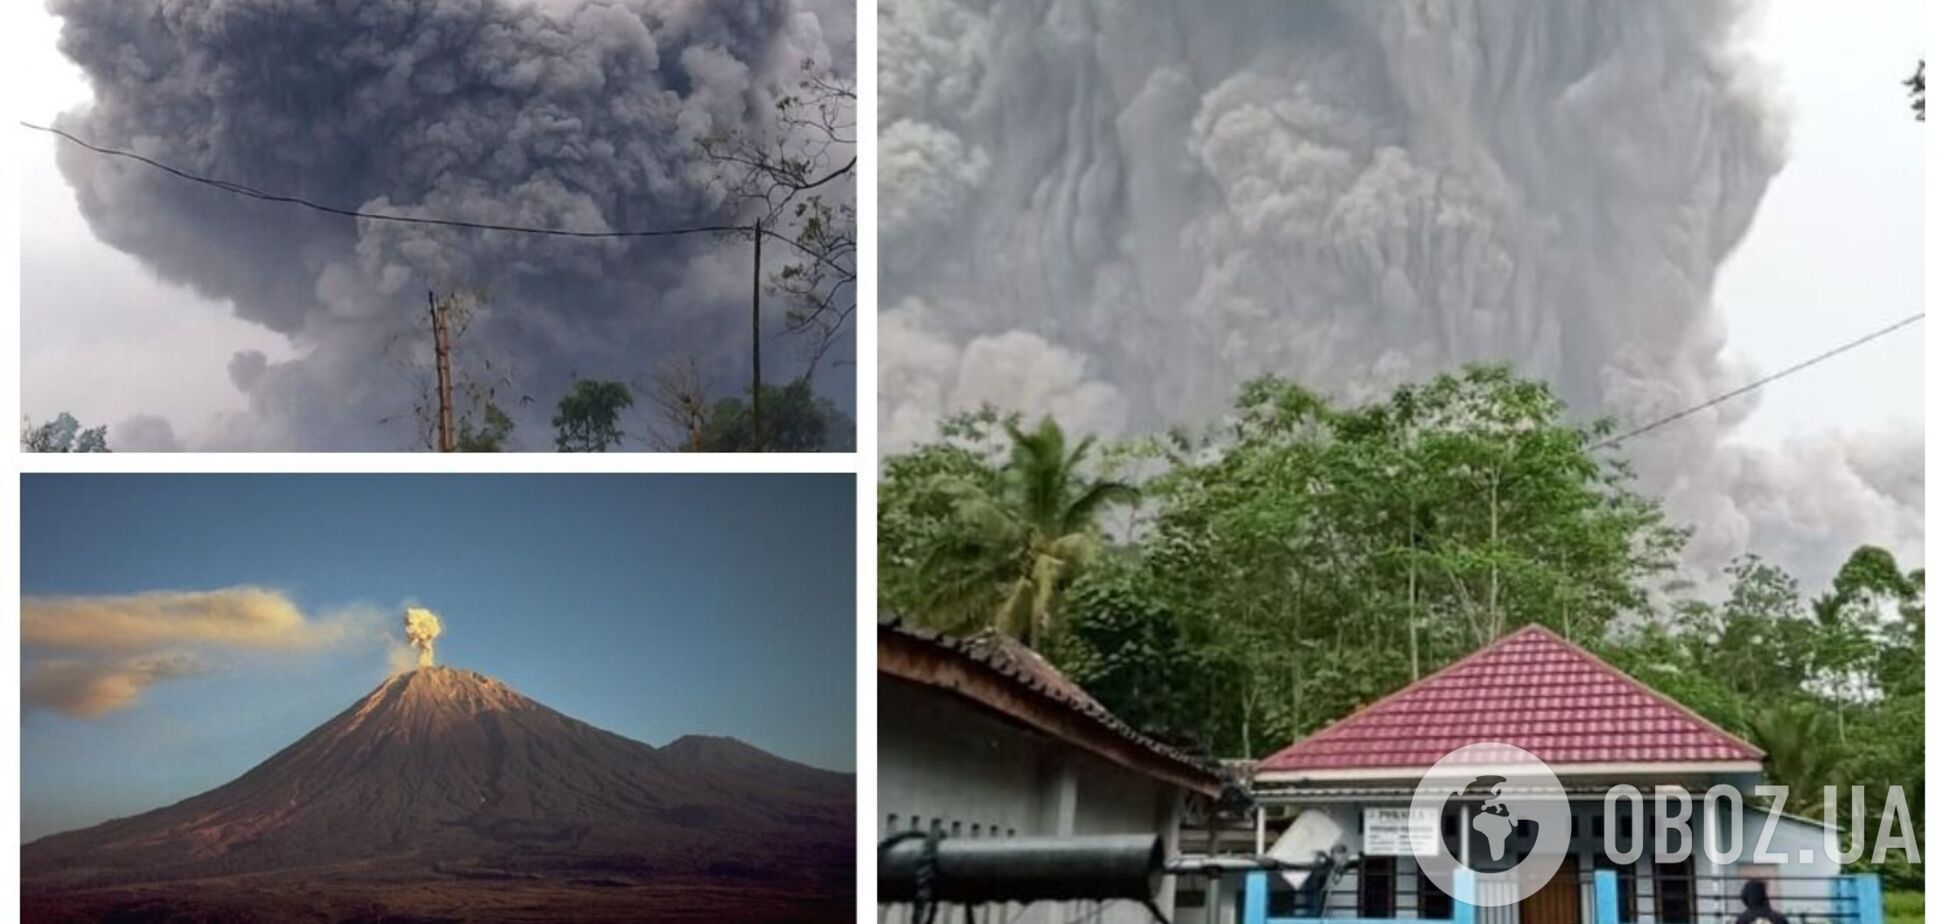 В Индонезии произошло мощное извержение вулкана Семеру: жители в панике спасаются. Фото и видео